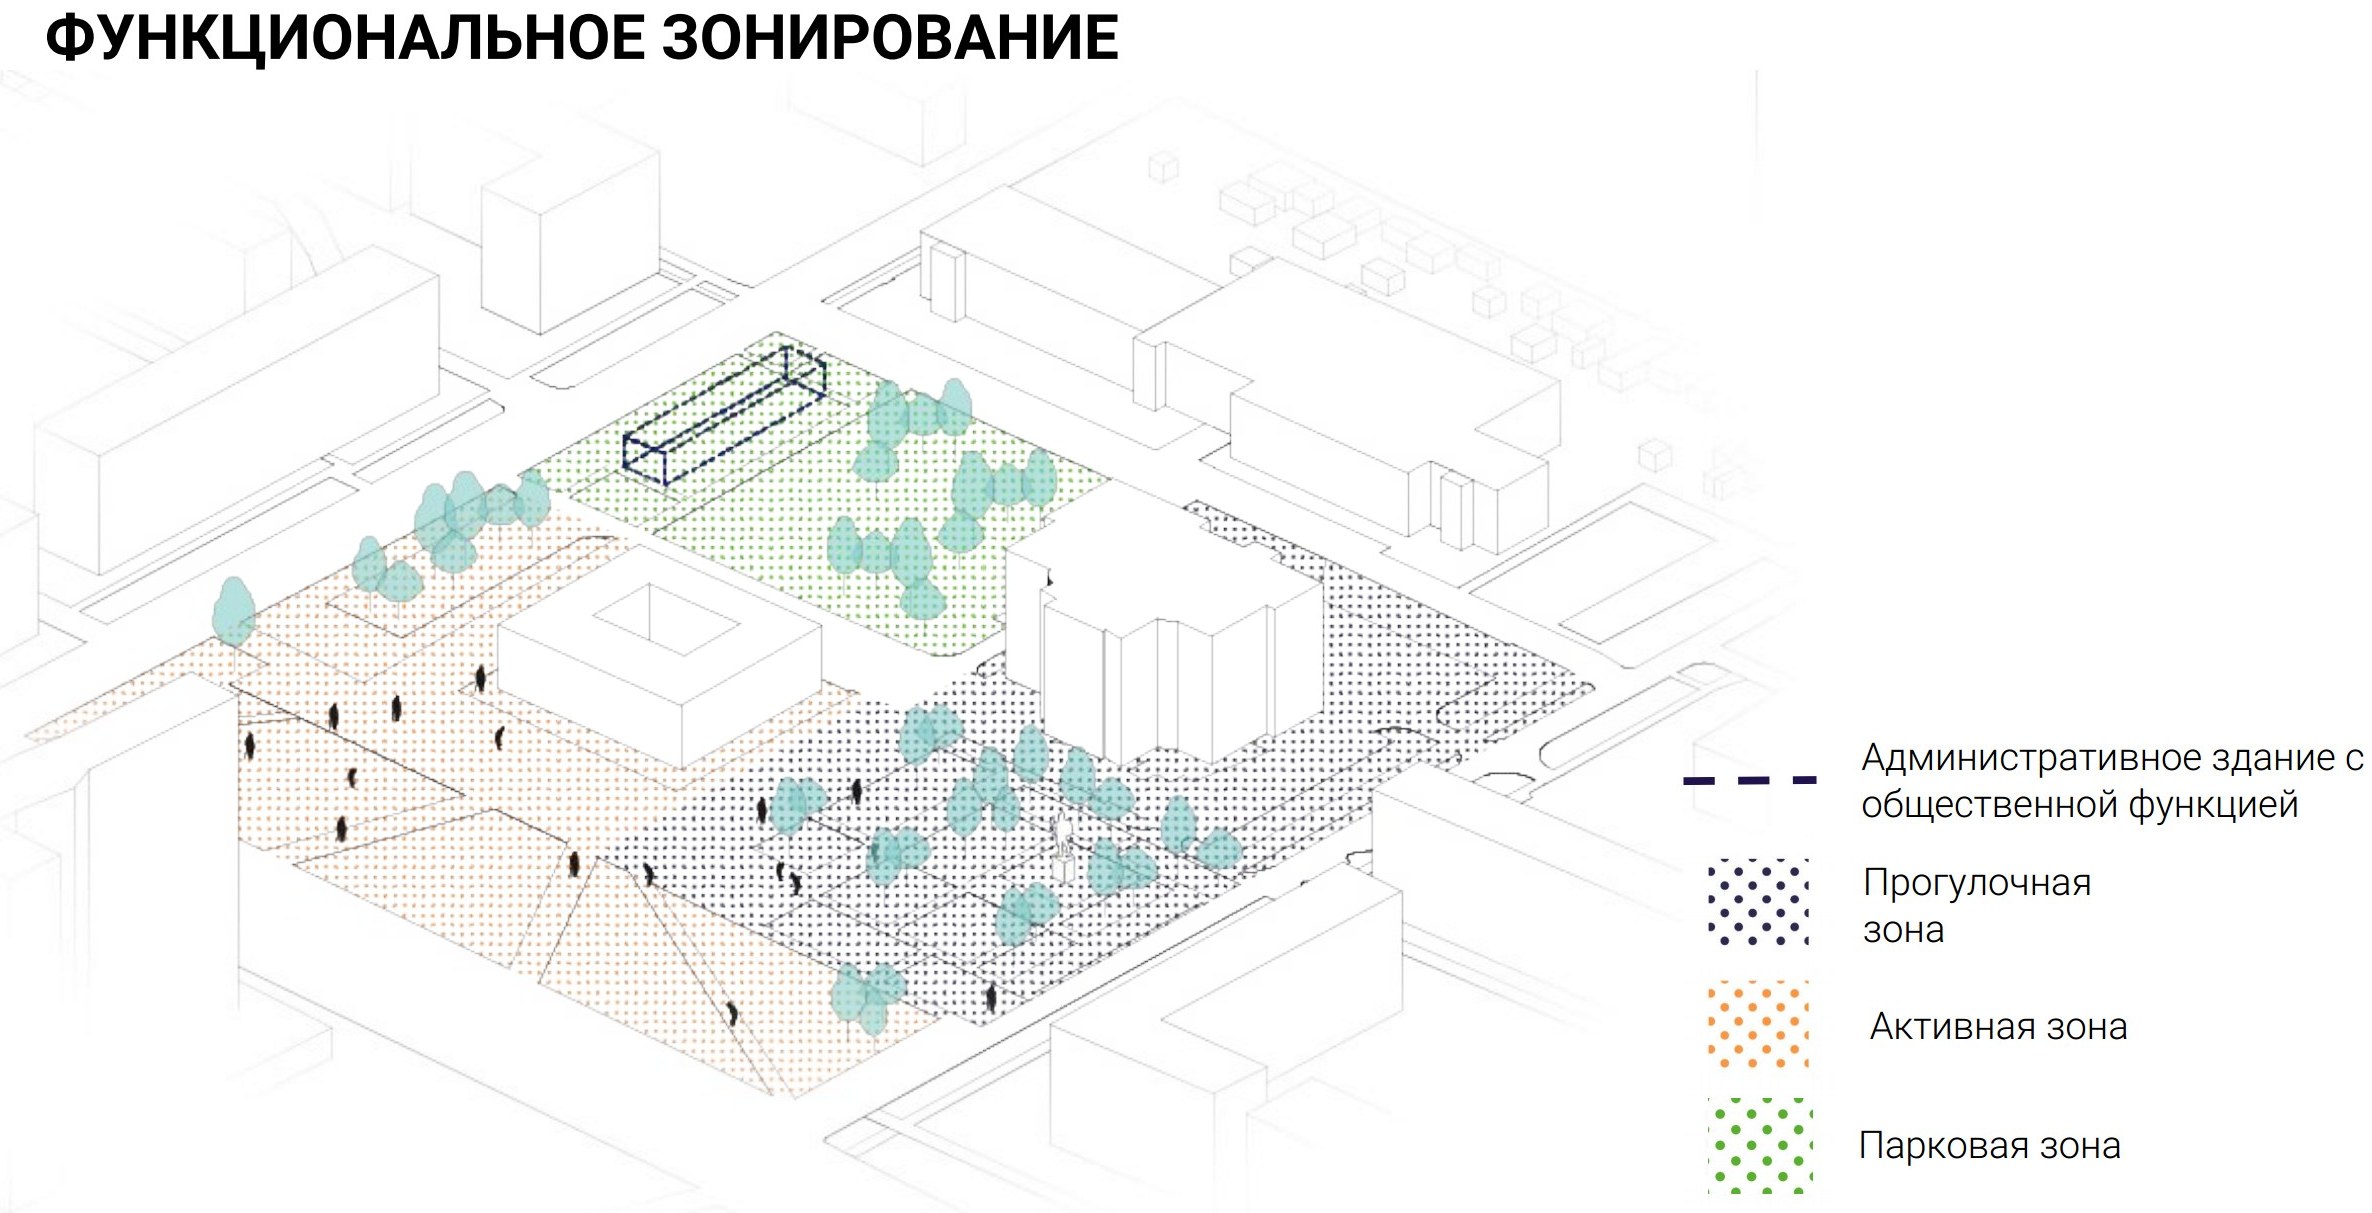 Из материалов концепции сквера, созданной по итогам работы мастерской городской среды «Осенний МАРШ в Ижевске». Схема функционального зонирования